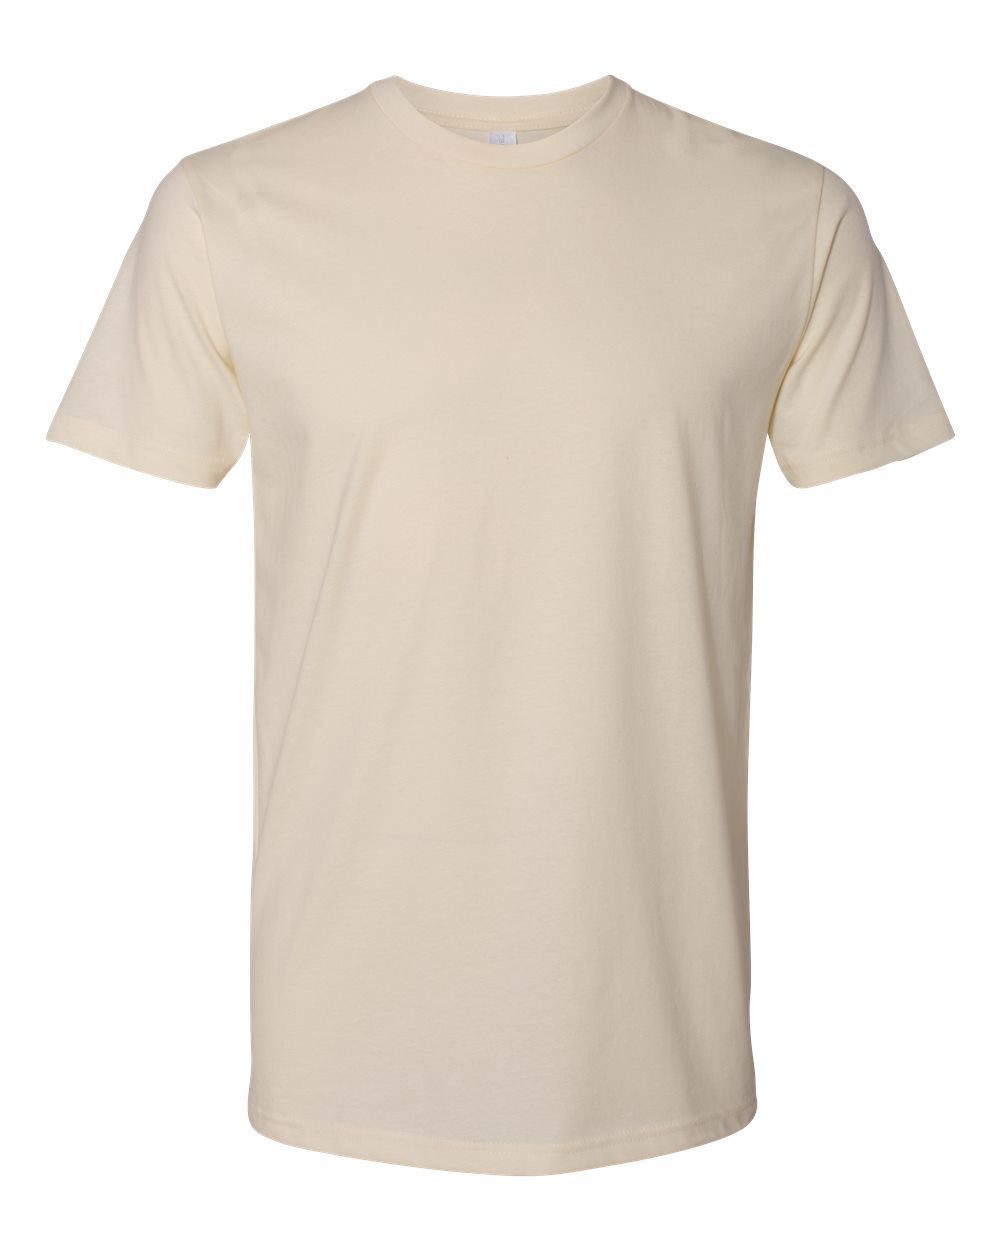 Next Level - Unisex Cotton T-Shirt - 3600